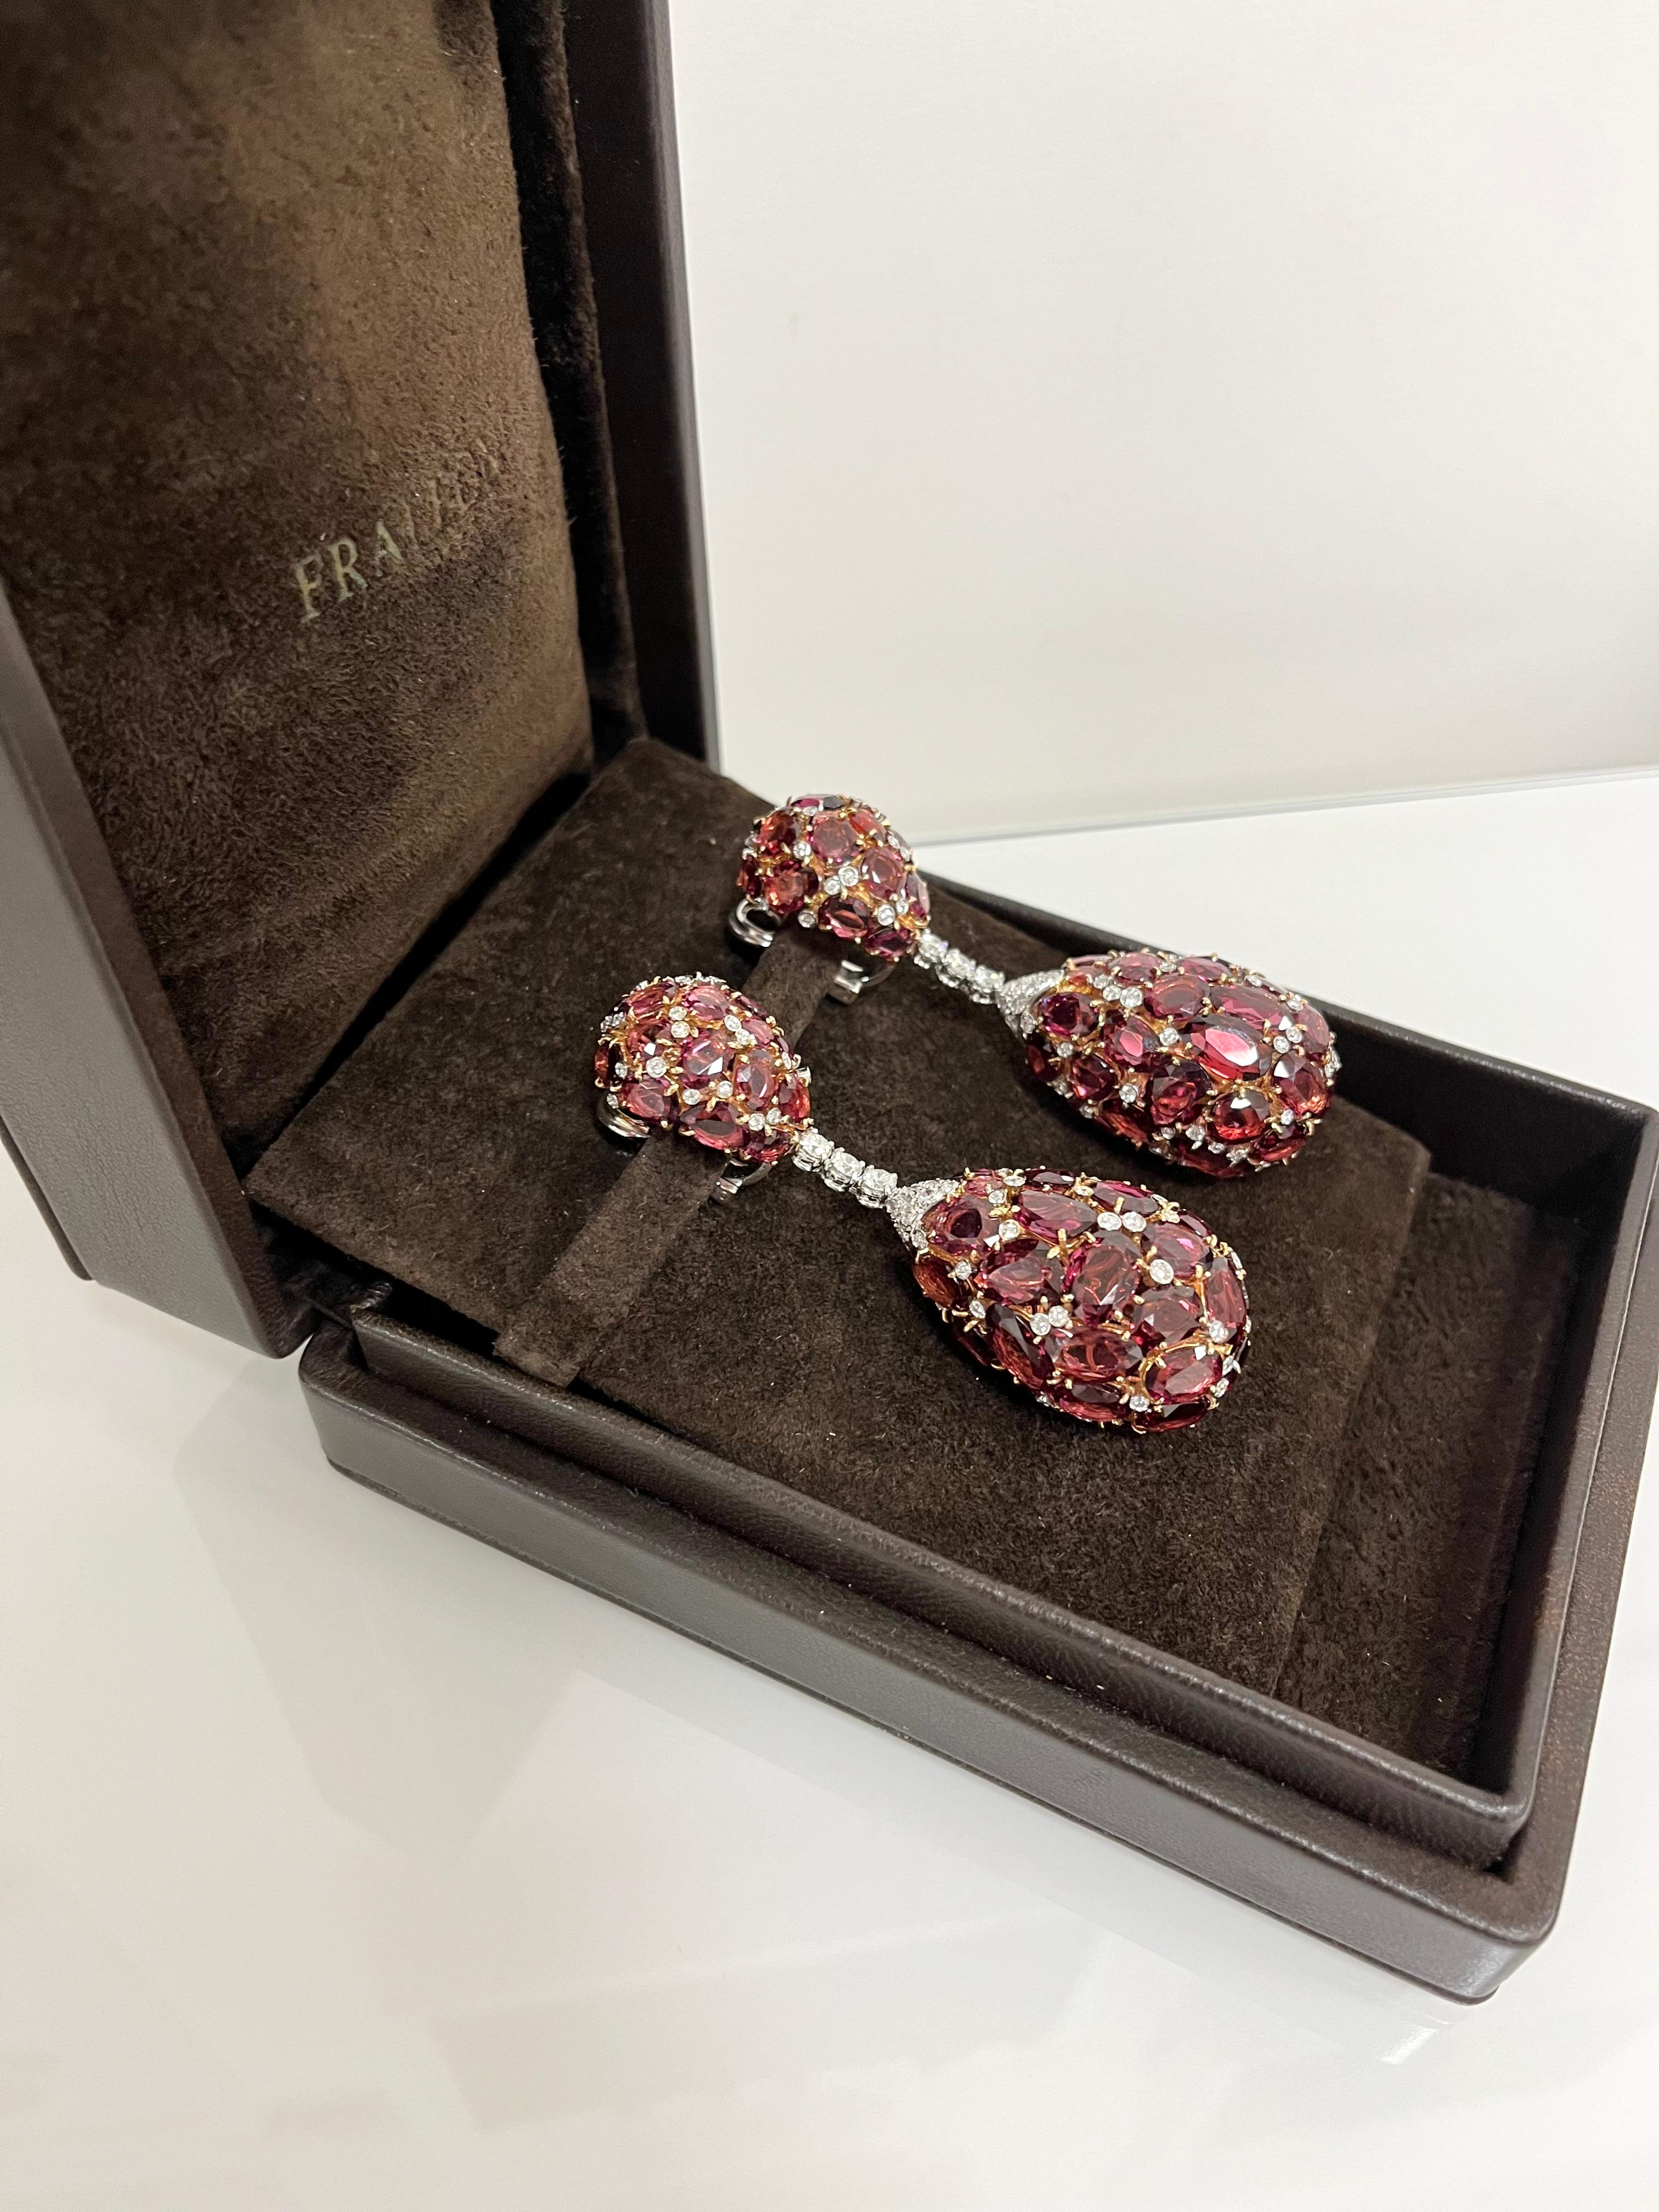 Fraleoni 18 Kt. White and Rose Gold Diamond Rodolite Pendant Earrings For Sale 2